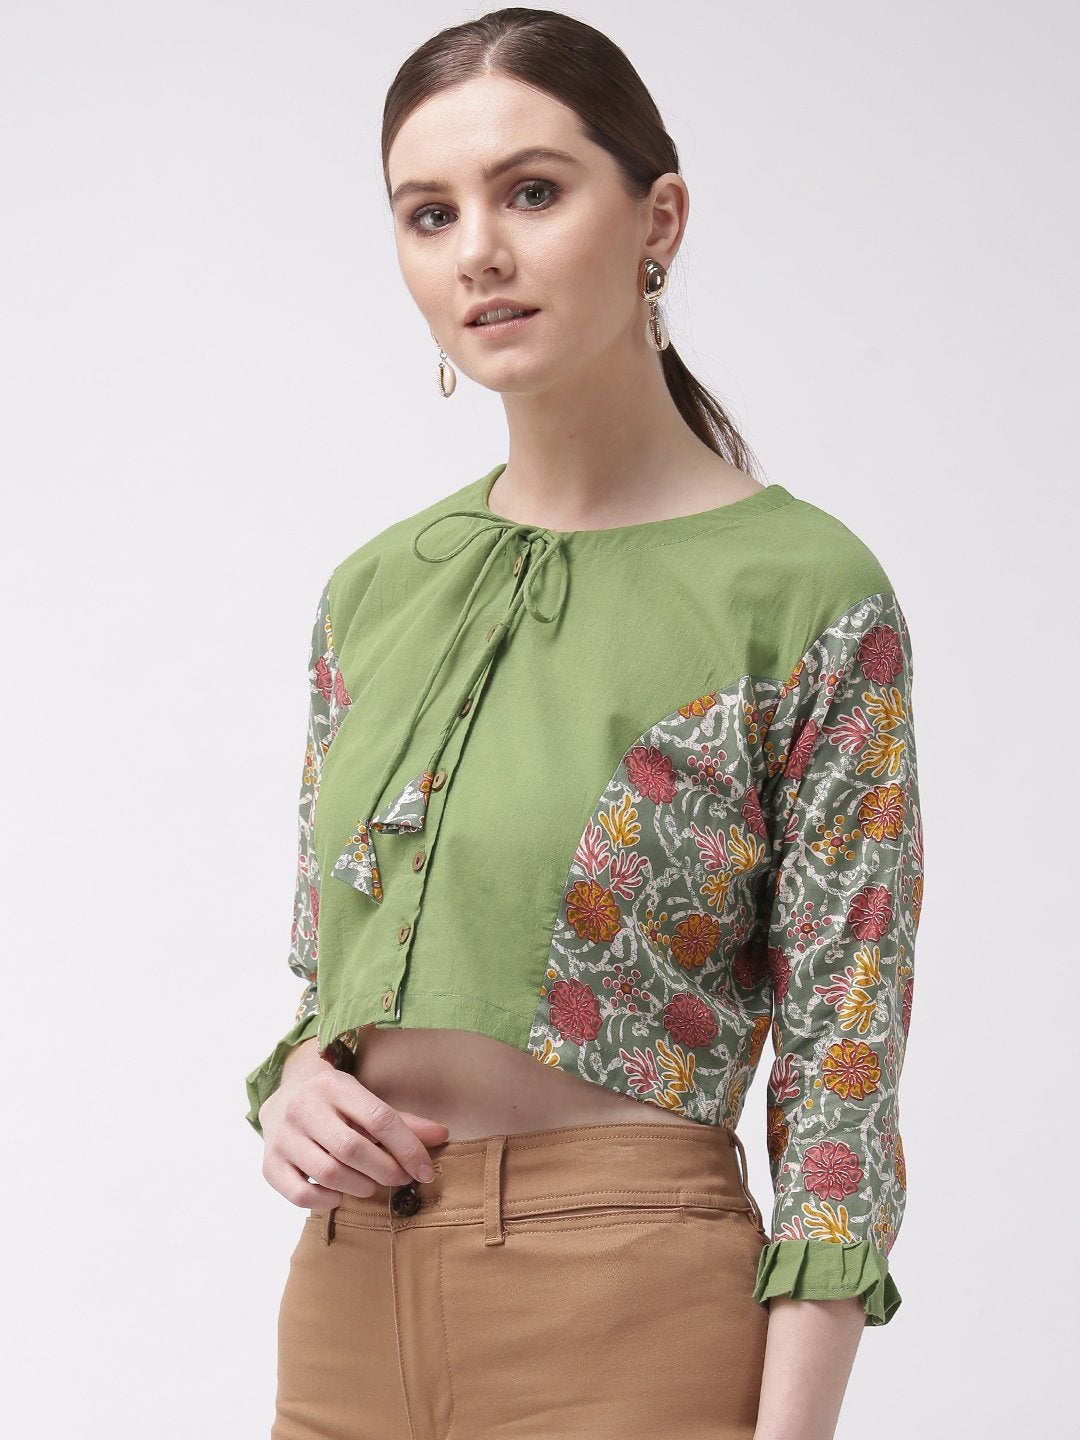 Women's Crop Top Green - Printed Sleeve - InWeave